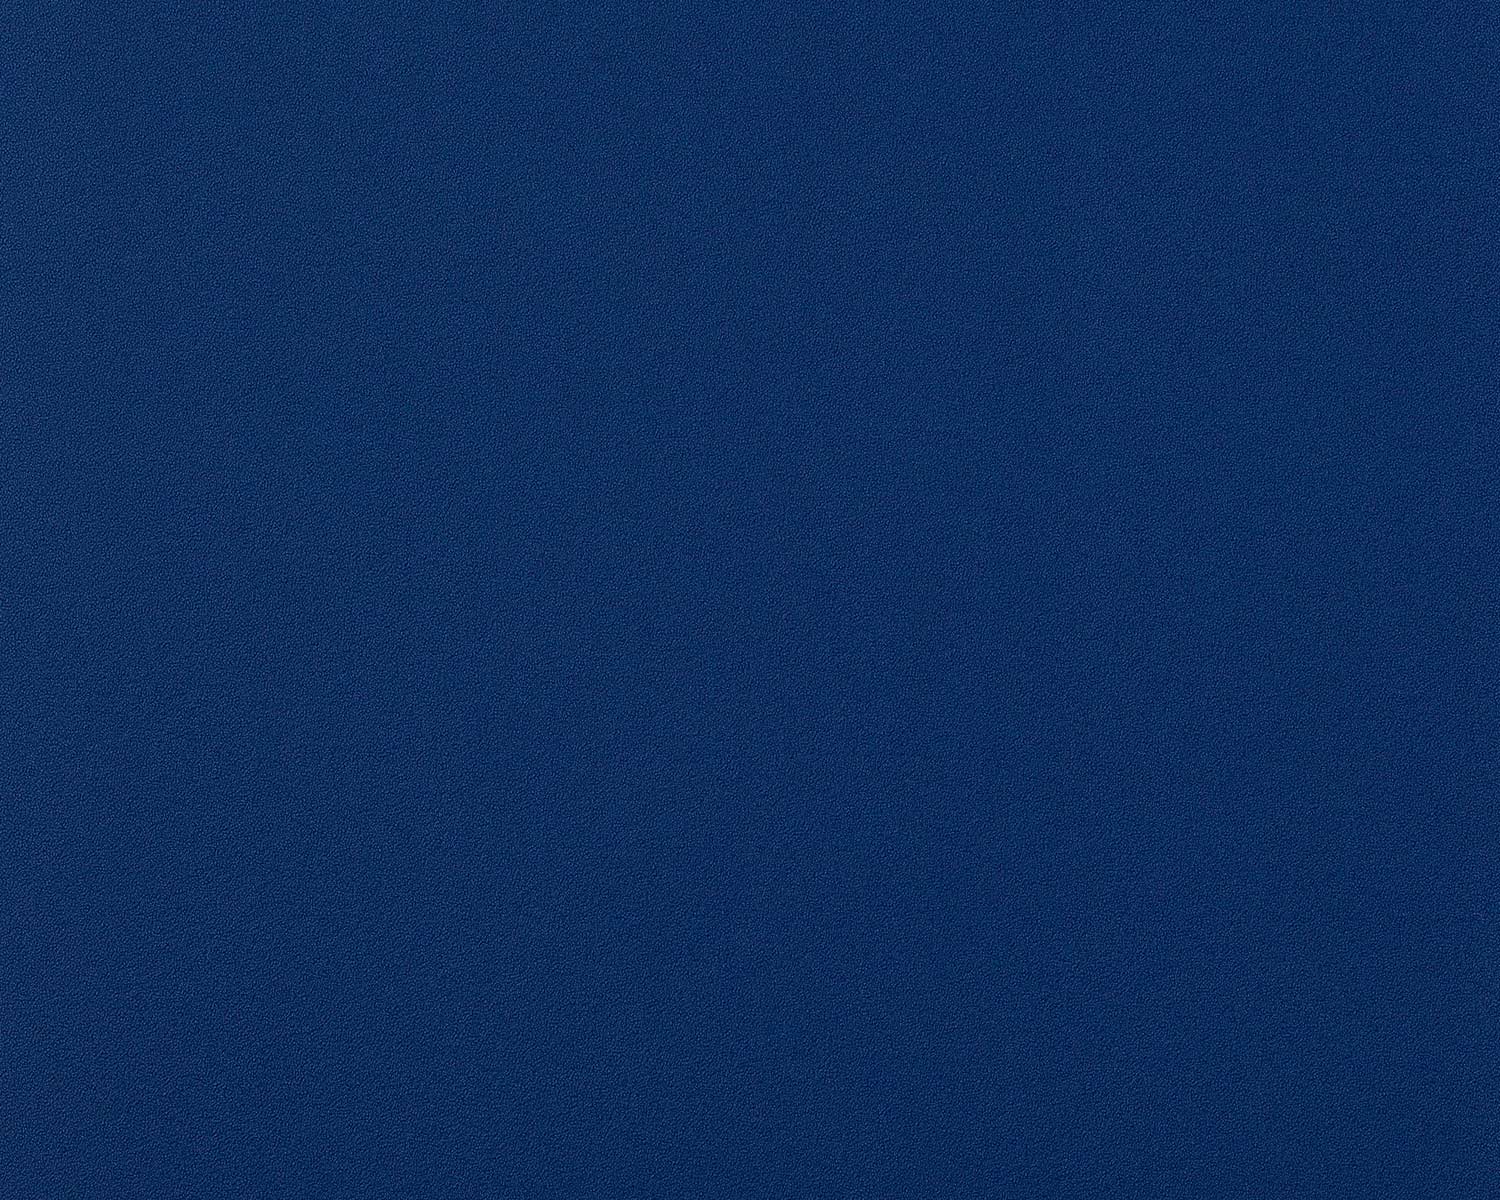 Gallery for - plain dark blue wallpaper